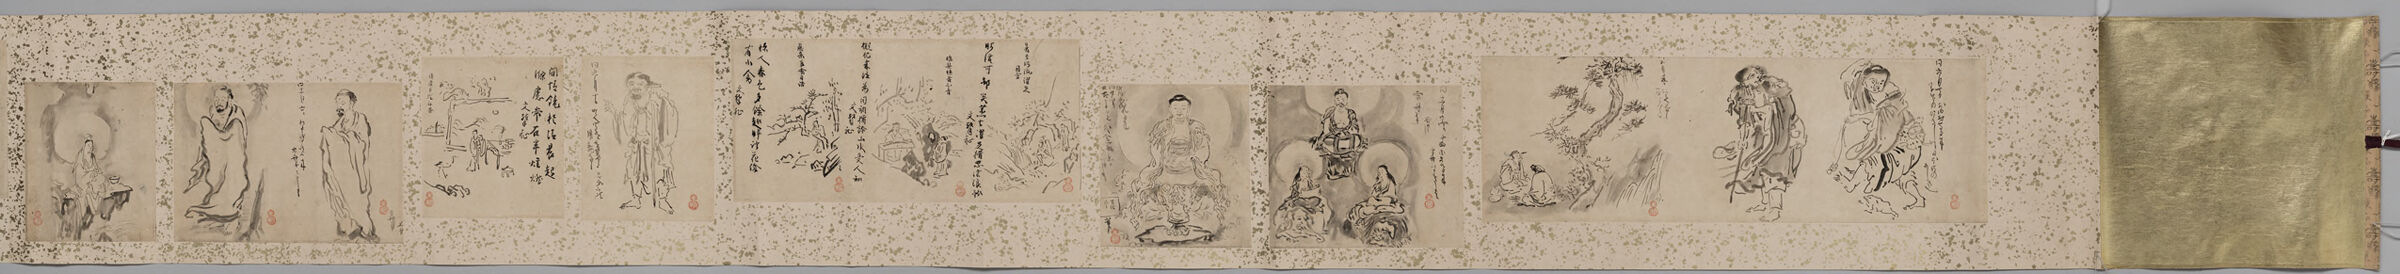 Connoisseur's Sketchbook By Kano Tan'yū (Tan'yū Shukuzu), Copies Of Buddhist Paintings, Vol. I